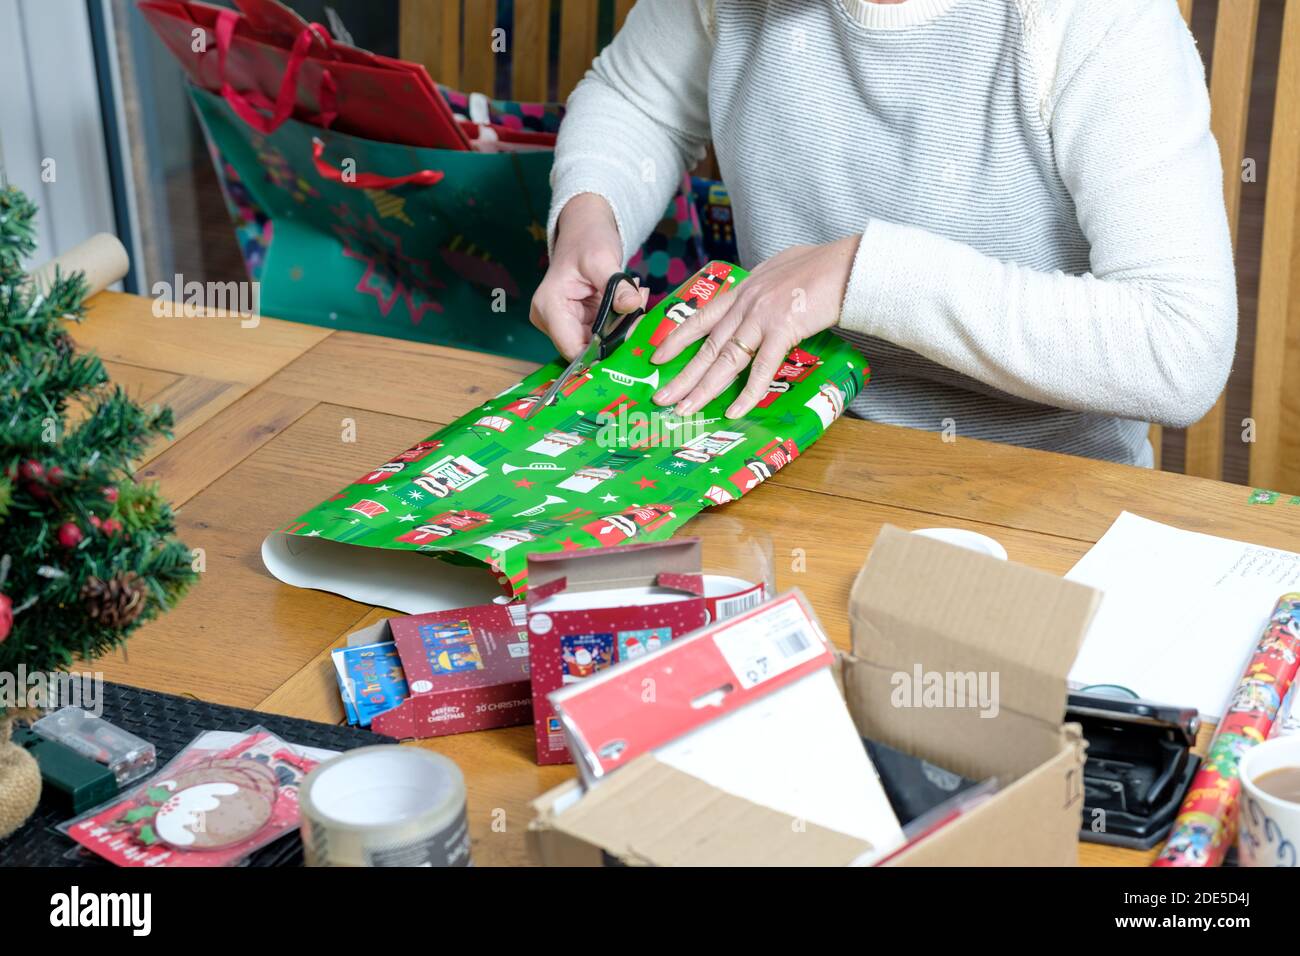 Une femme, assise à une table, enveloppe un cadeau de noël dans un papier cadeau de noël aux couleurs vives. Elle tonde le papier à la taille avec des ciseaux Banque D'Images